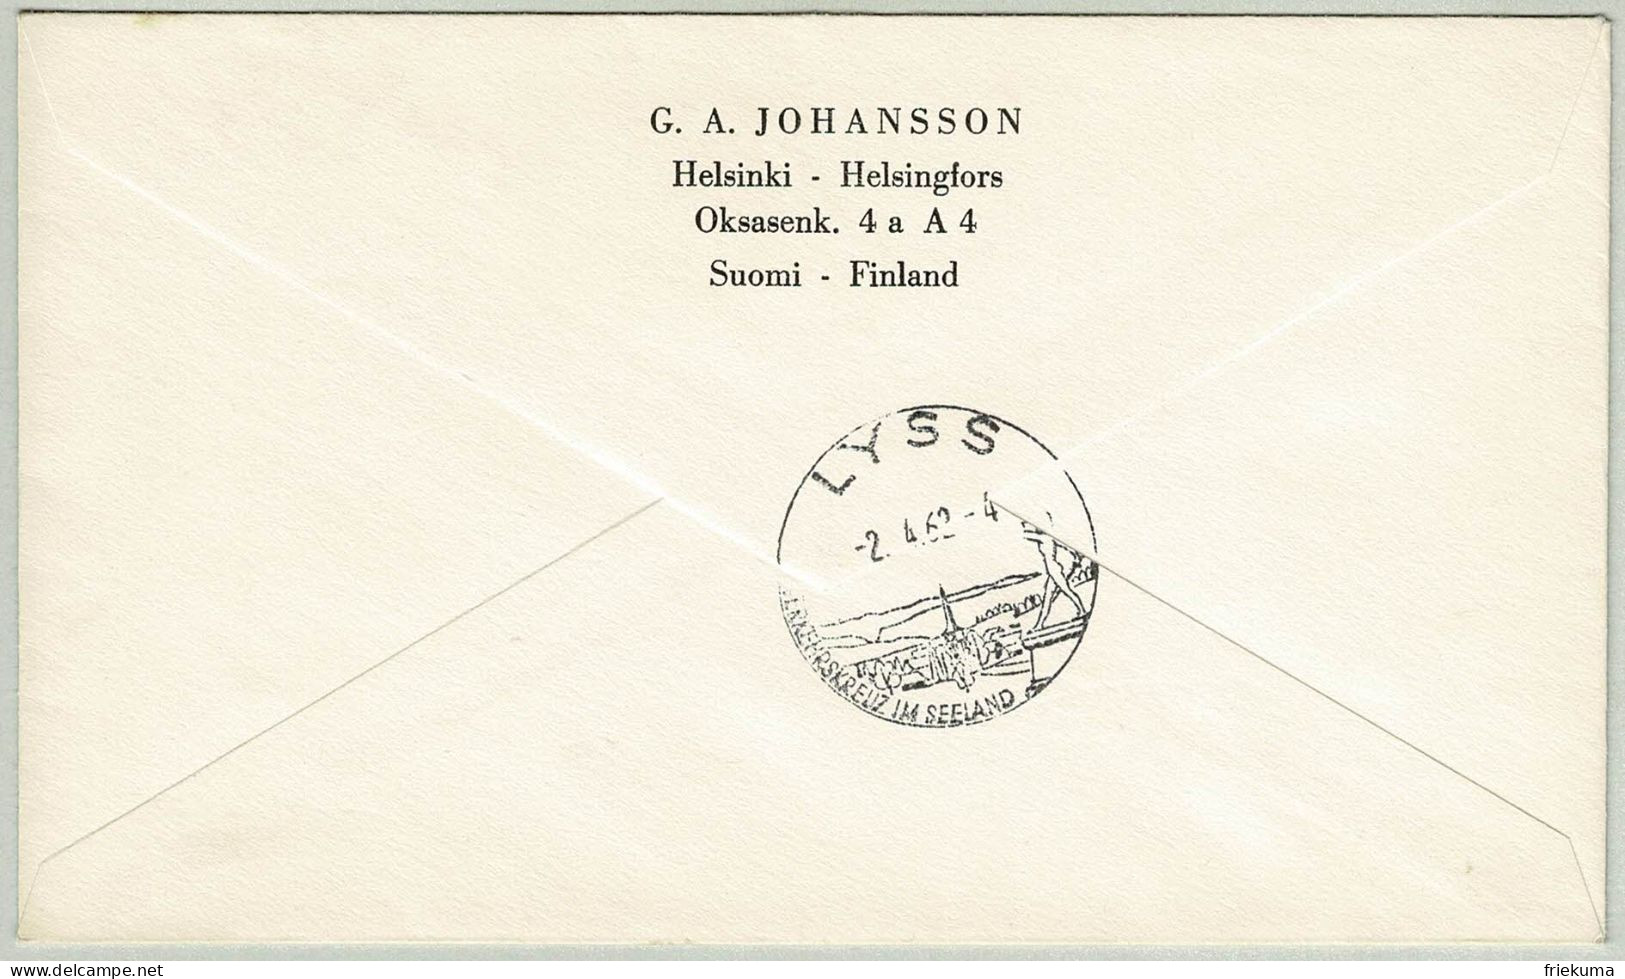 Finnland / Finland 1962, Brief Einschreiben Helsinki - Lyss (Schweiz) - Lettres & Documents